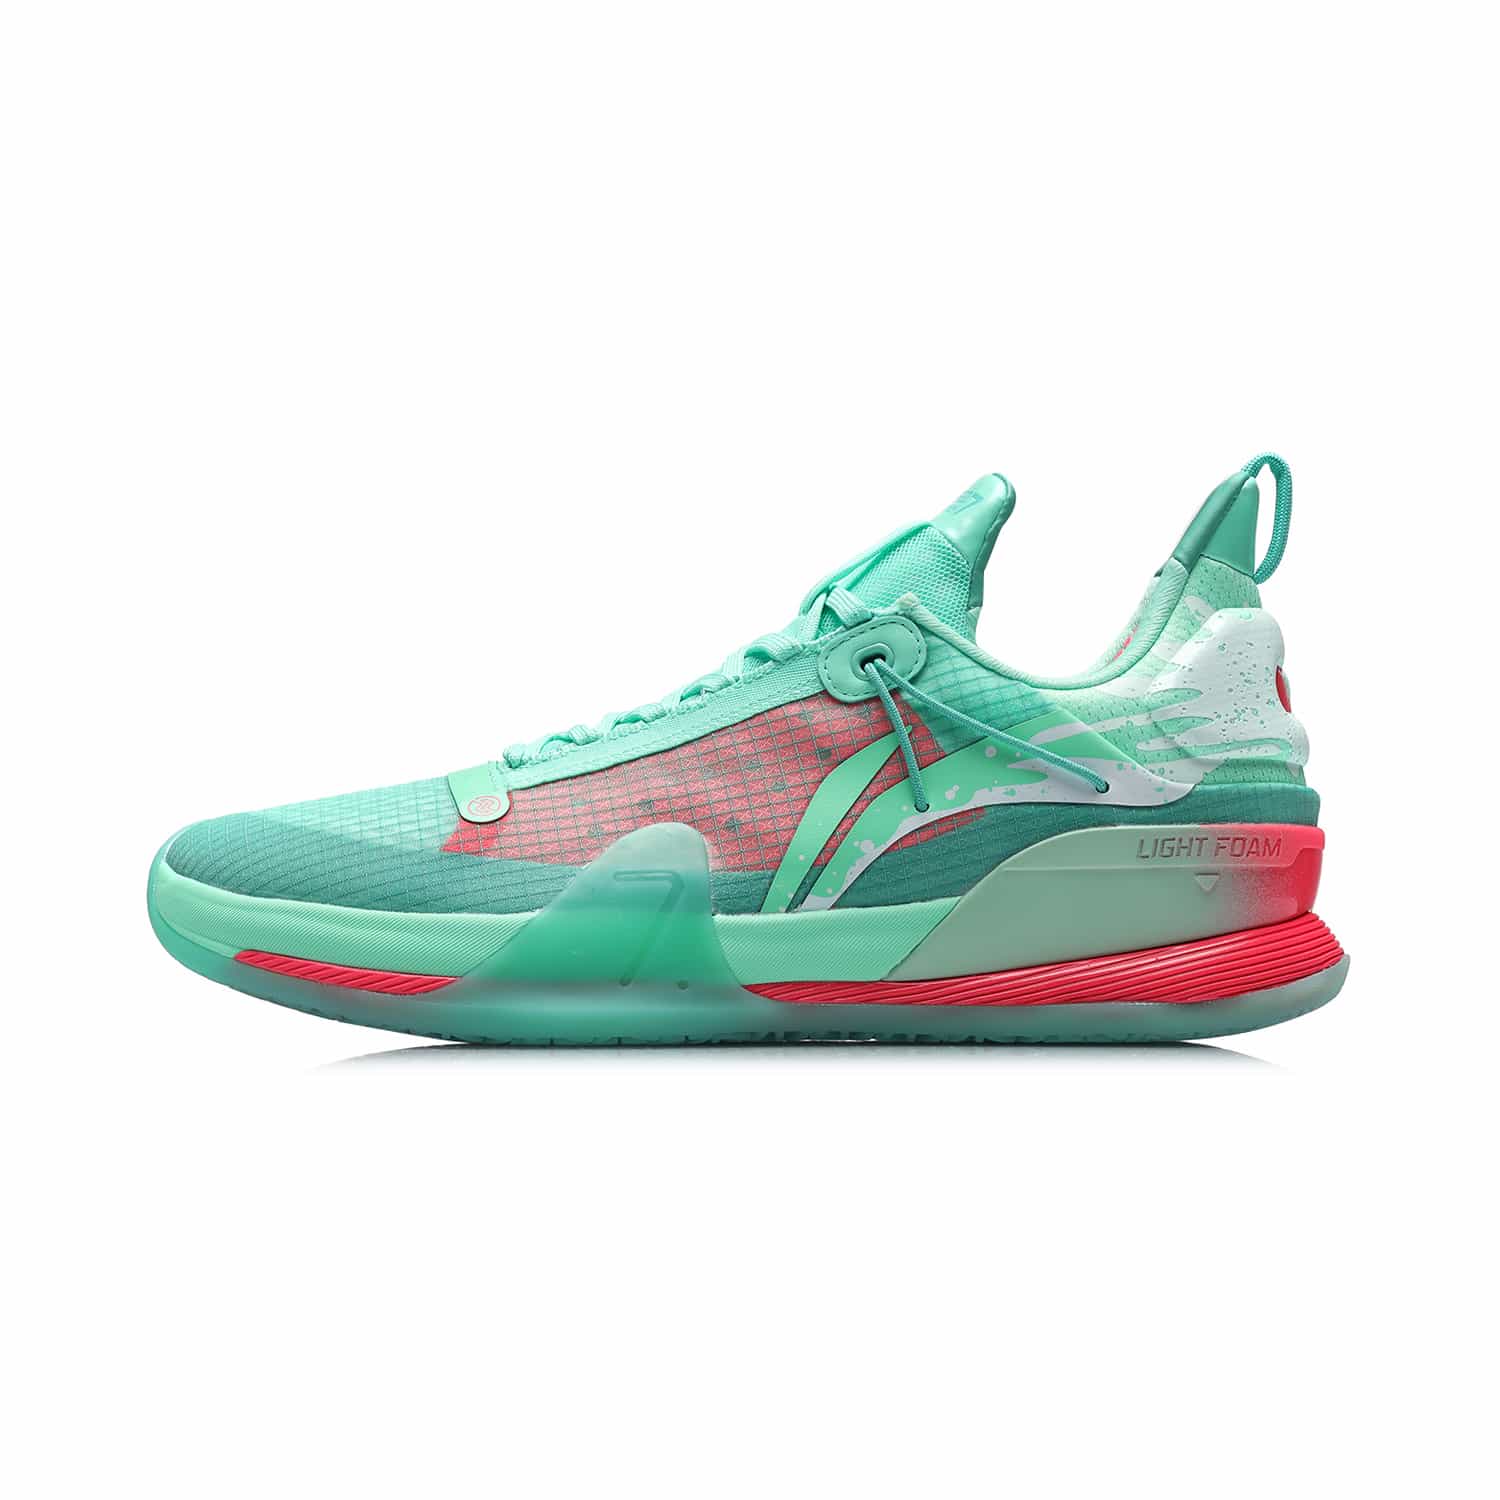 閃擊 VII Premium 實戰籃球鞋 - 螢光翠綠/玉霜綠